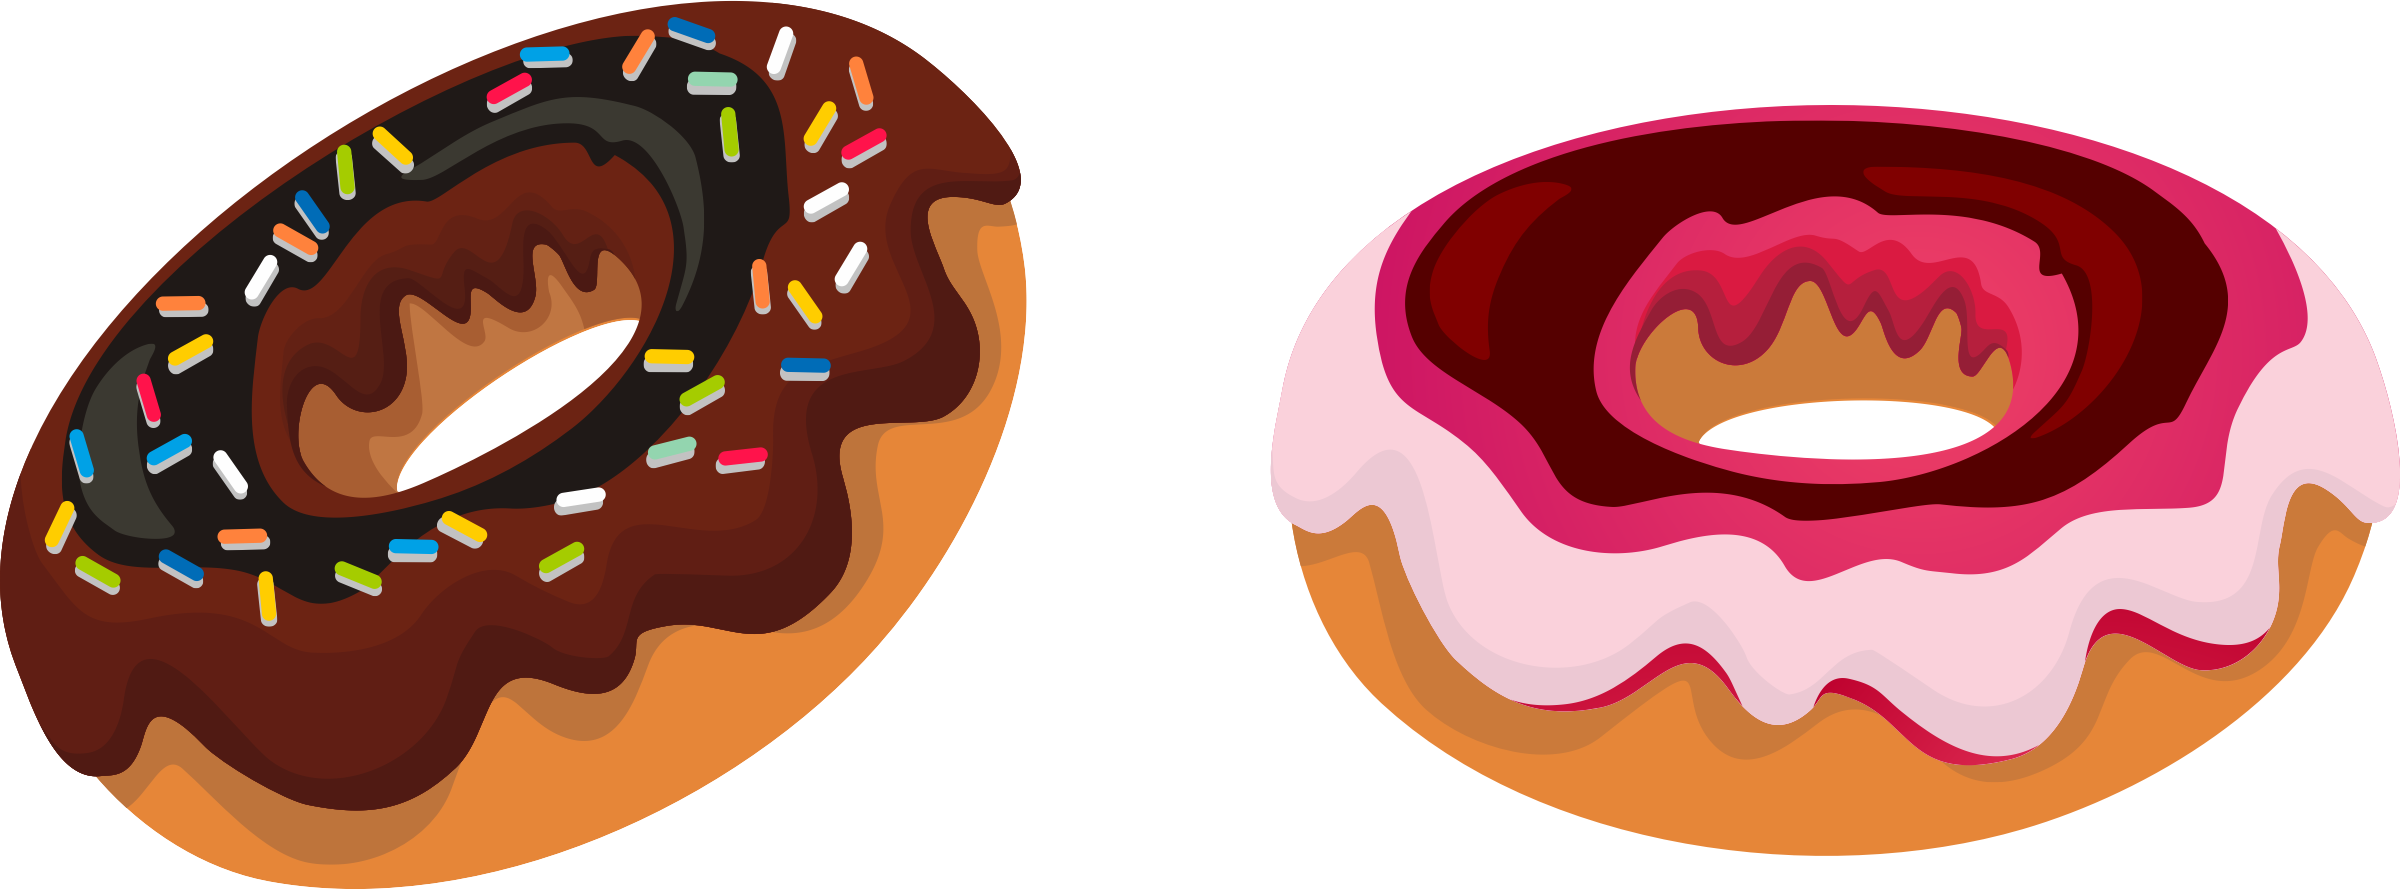 clipart donut logo - photo #11